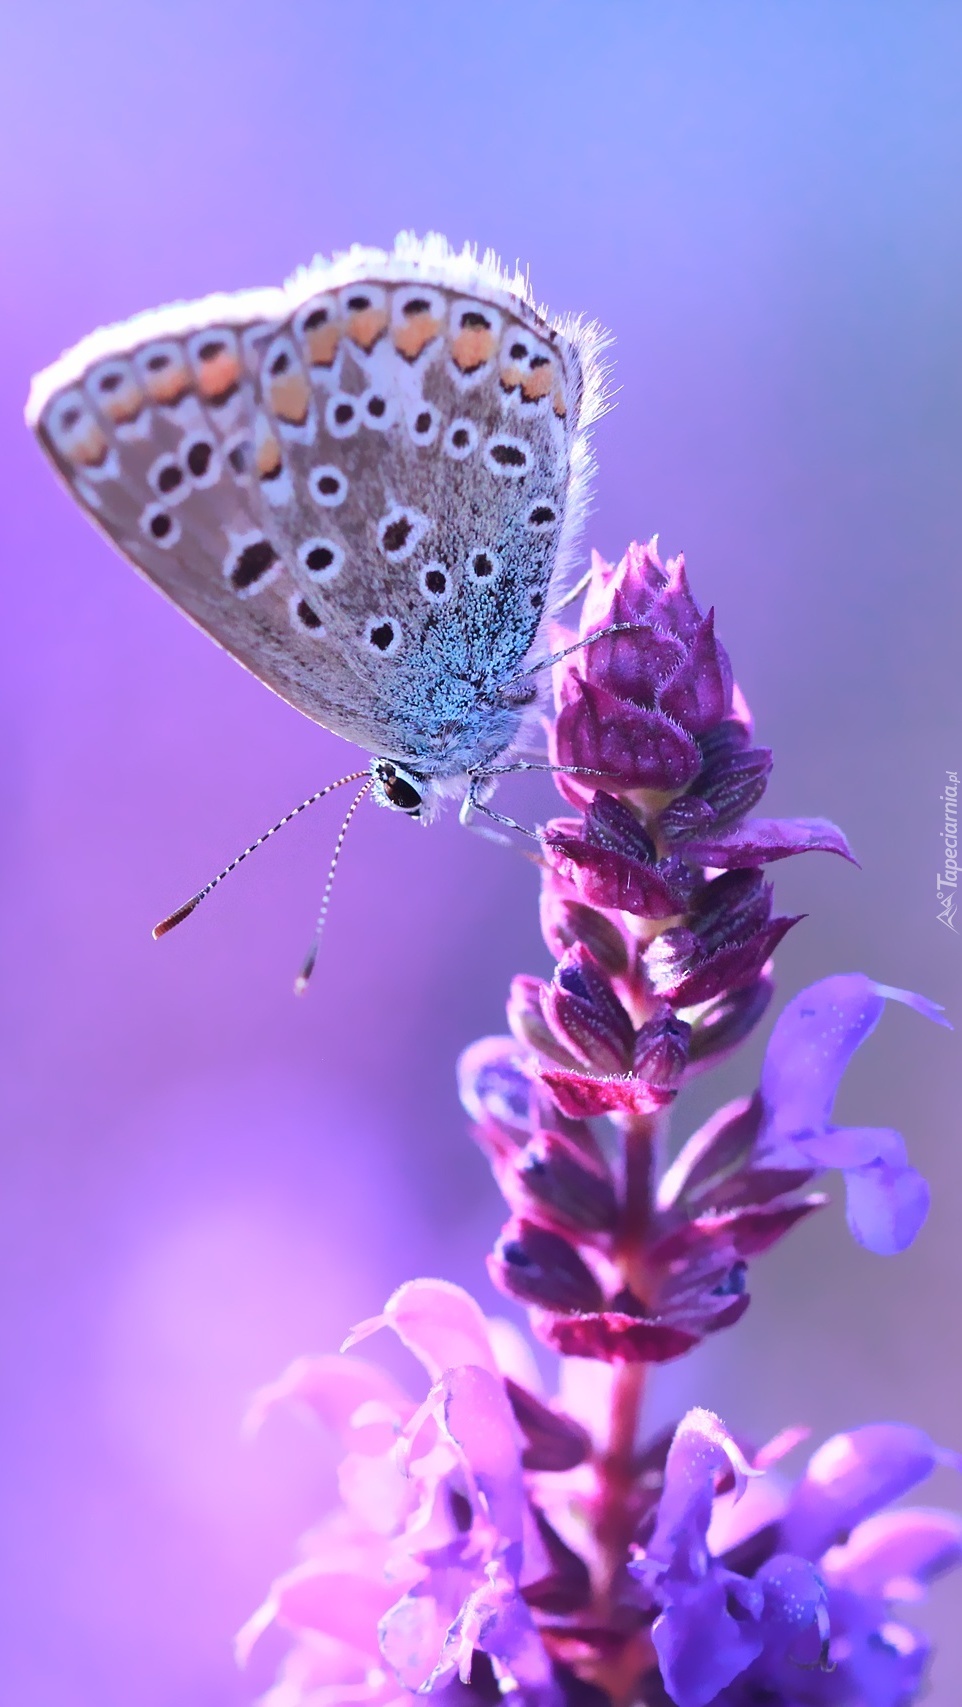 Modraszek na fioletowym kwiatku